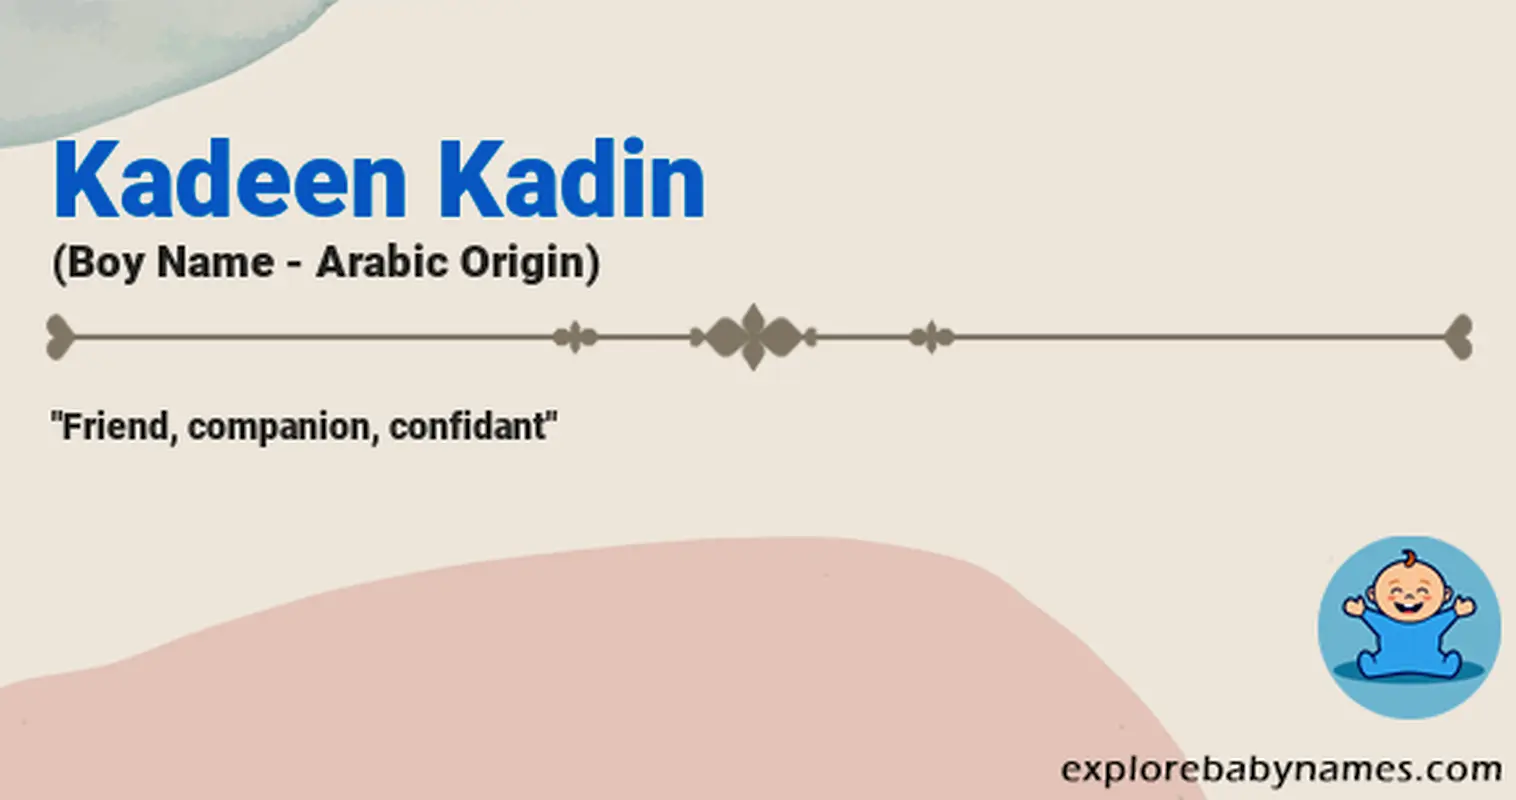 Meaning of Kadeen Kadin